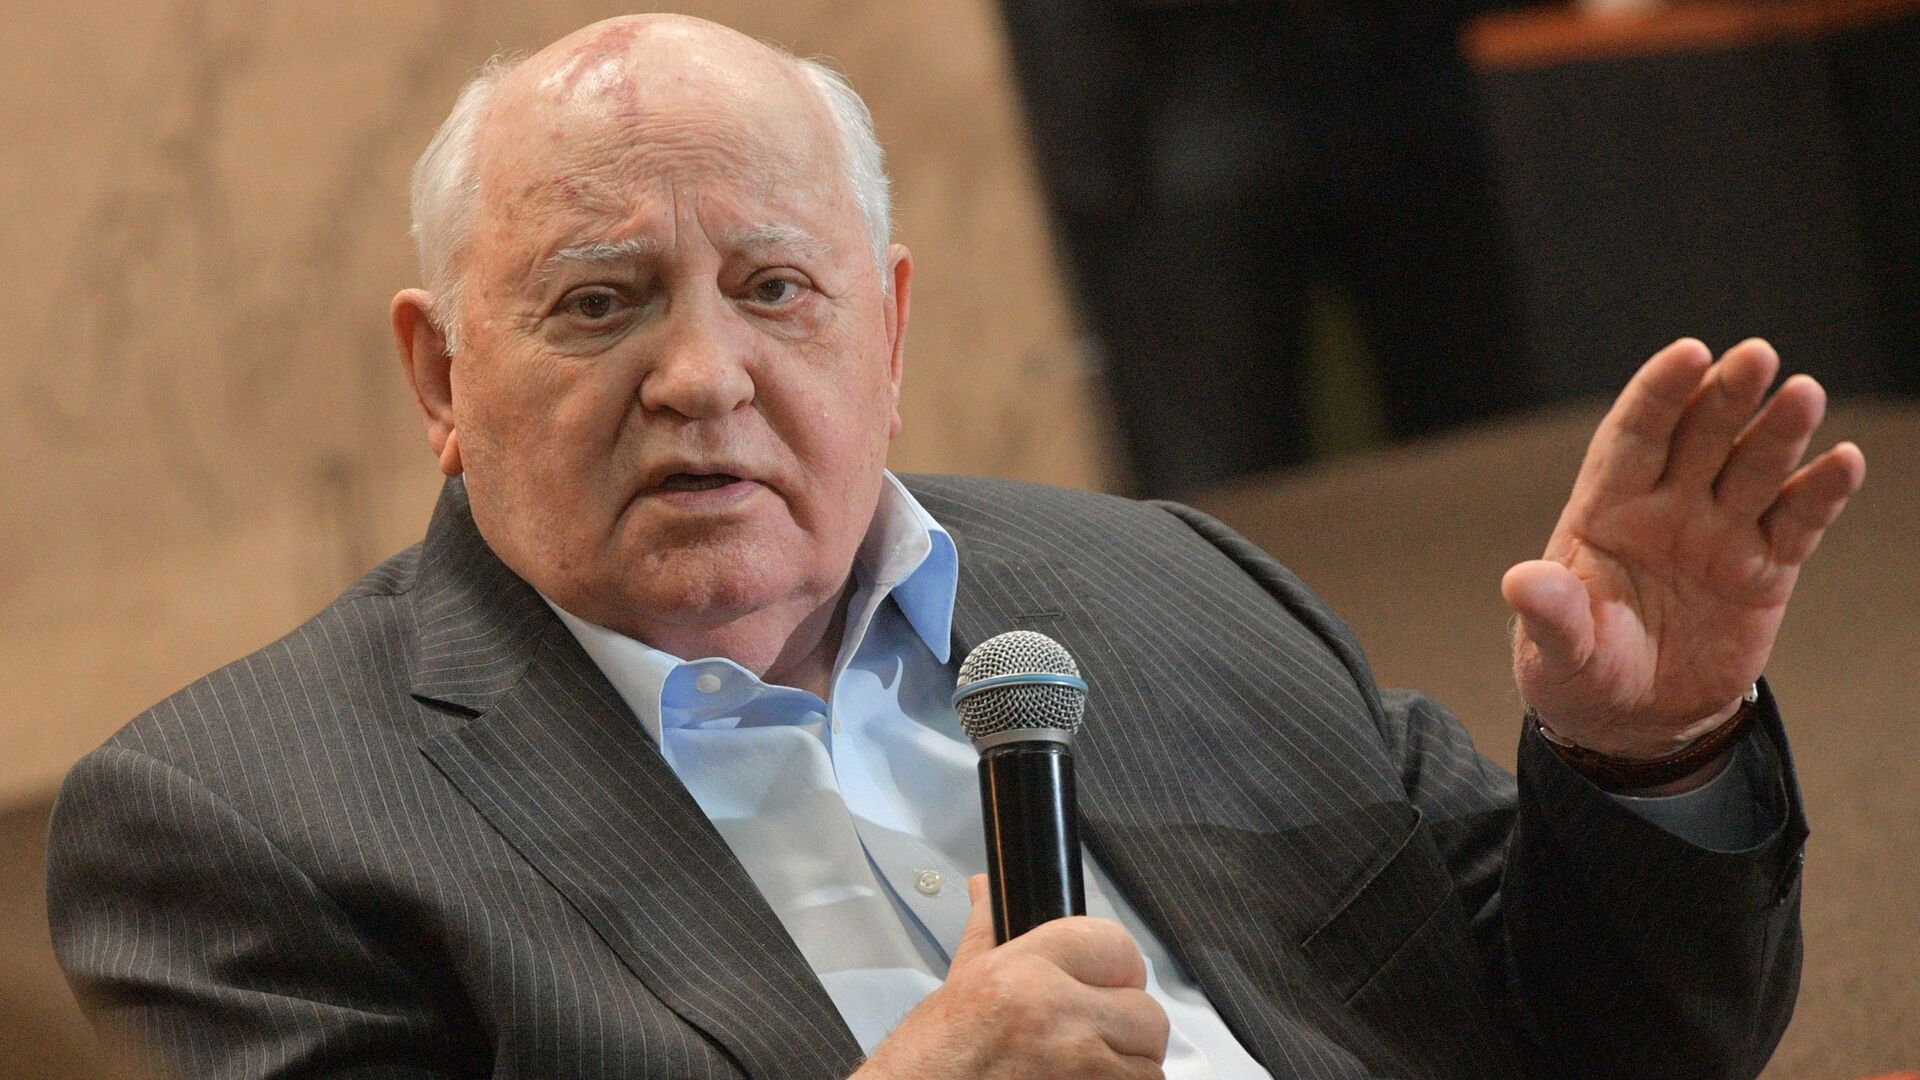 Buvęs TSRS prezidentas Michailas Gorbačiovas - Sputnik Lietuva, 1920, 01.03.2021